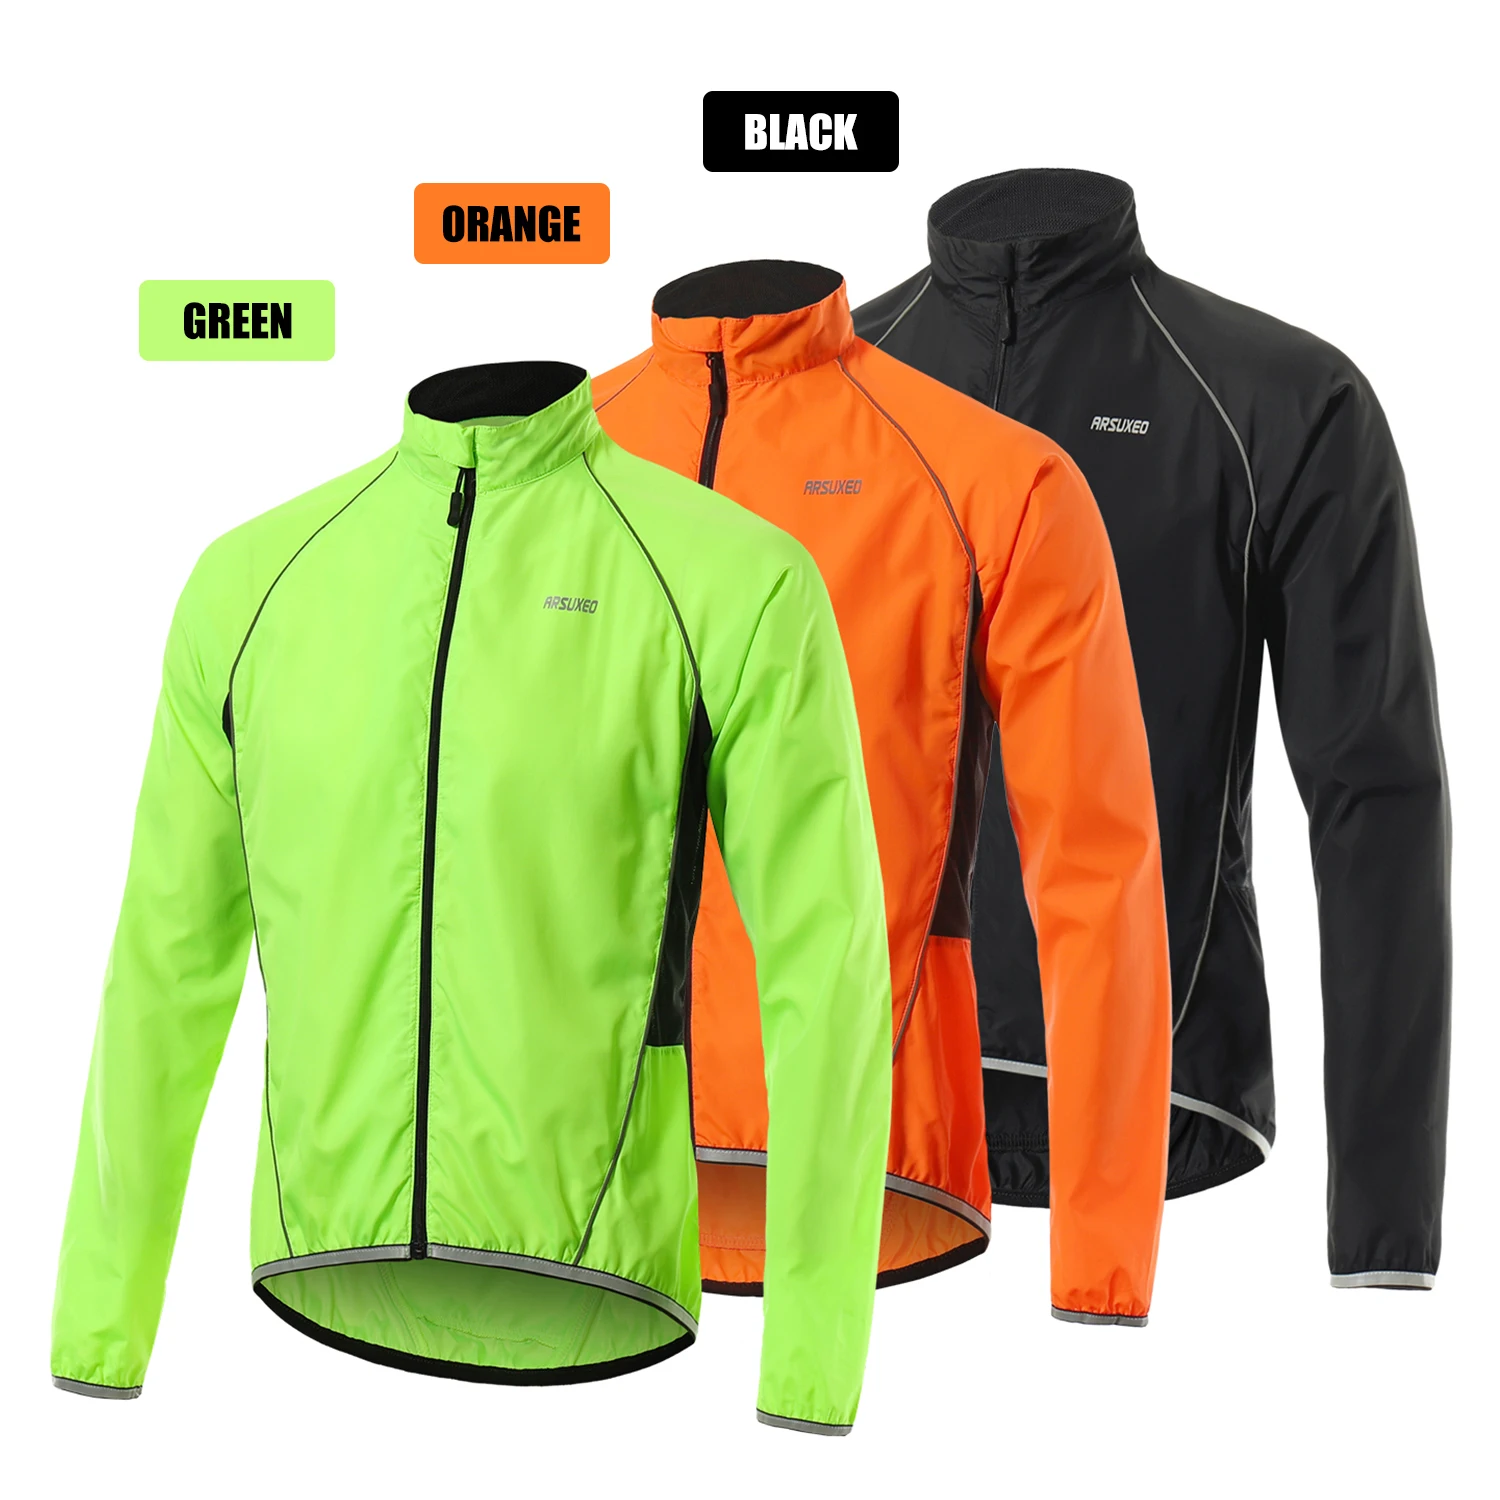 Мужские светоотражающие куртки для велоспорта, женские дышащие водонепроницаемые легкие куртки из ткани премиум класса, одежда для велоспорта и горного велосипеда